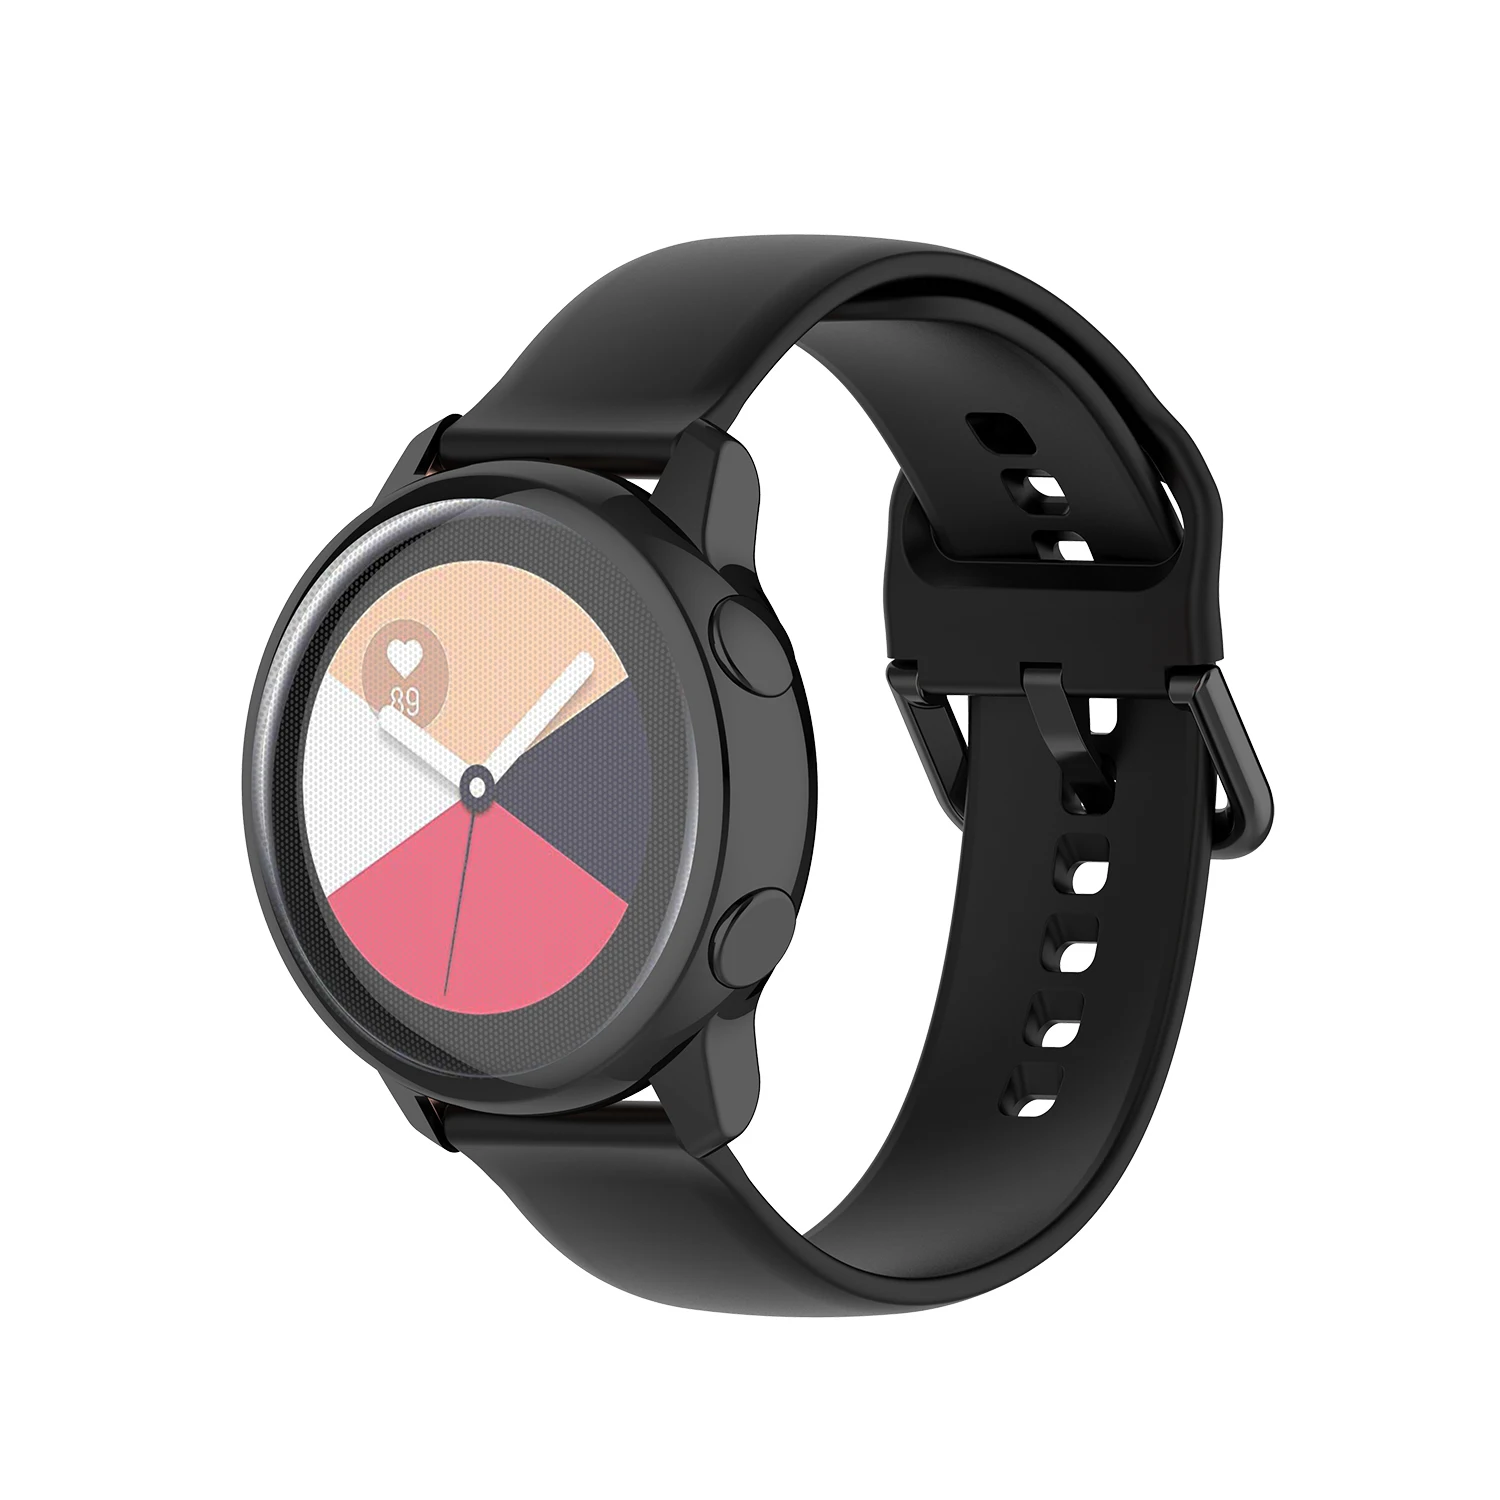 Чехол для часов samsung galaxy Watch active/R500, чехол, покрытие, цветной прозрачный мягкий ТПУ Пластиковый защитный чехол